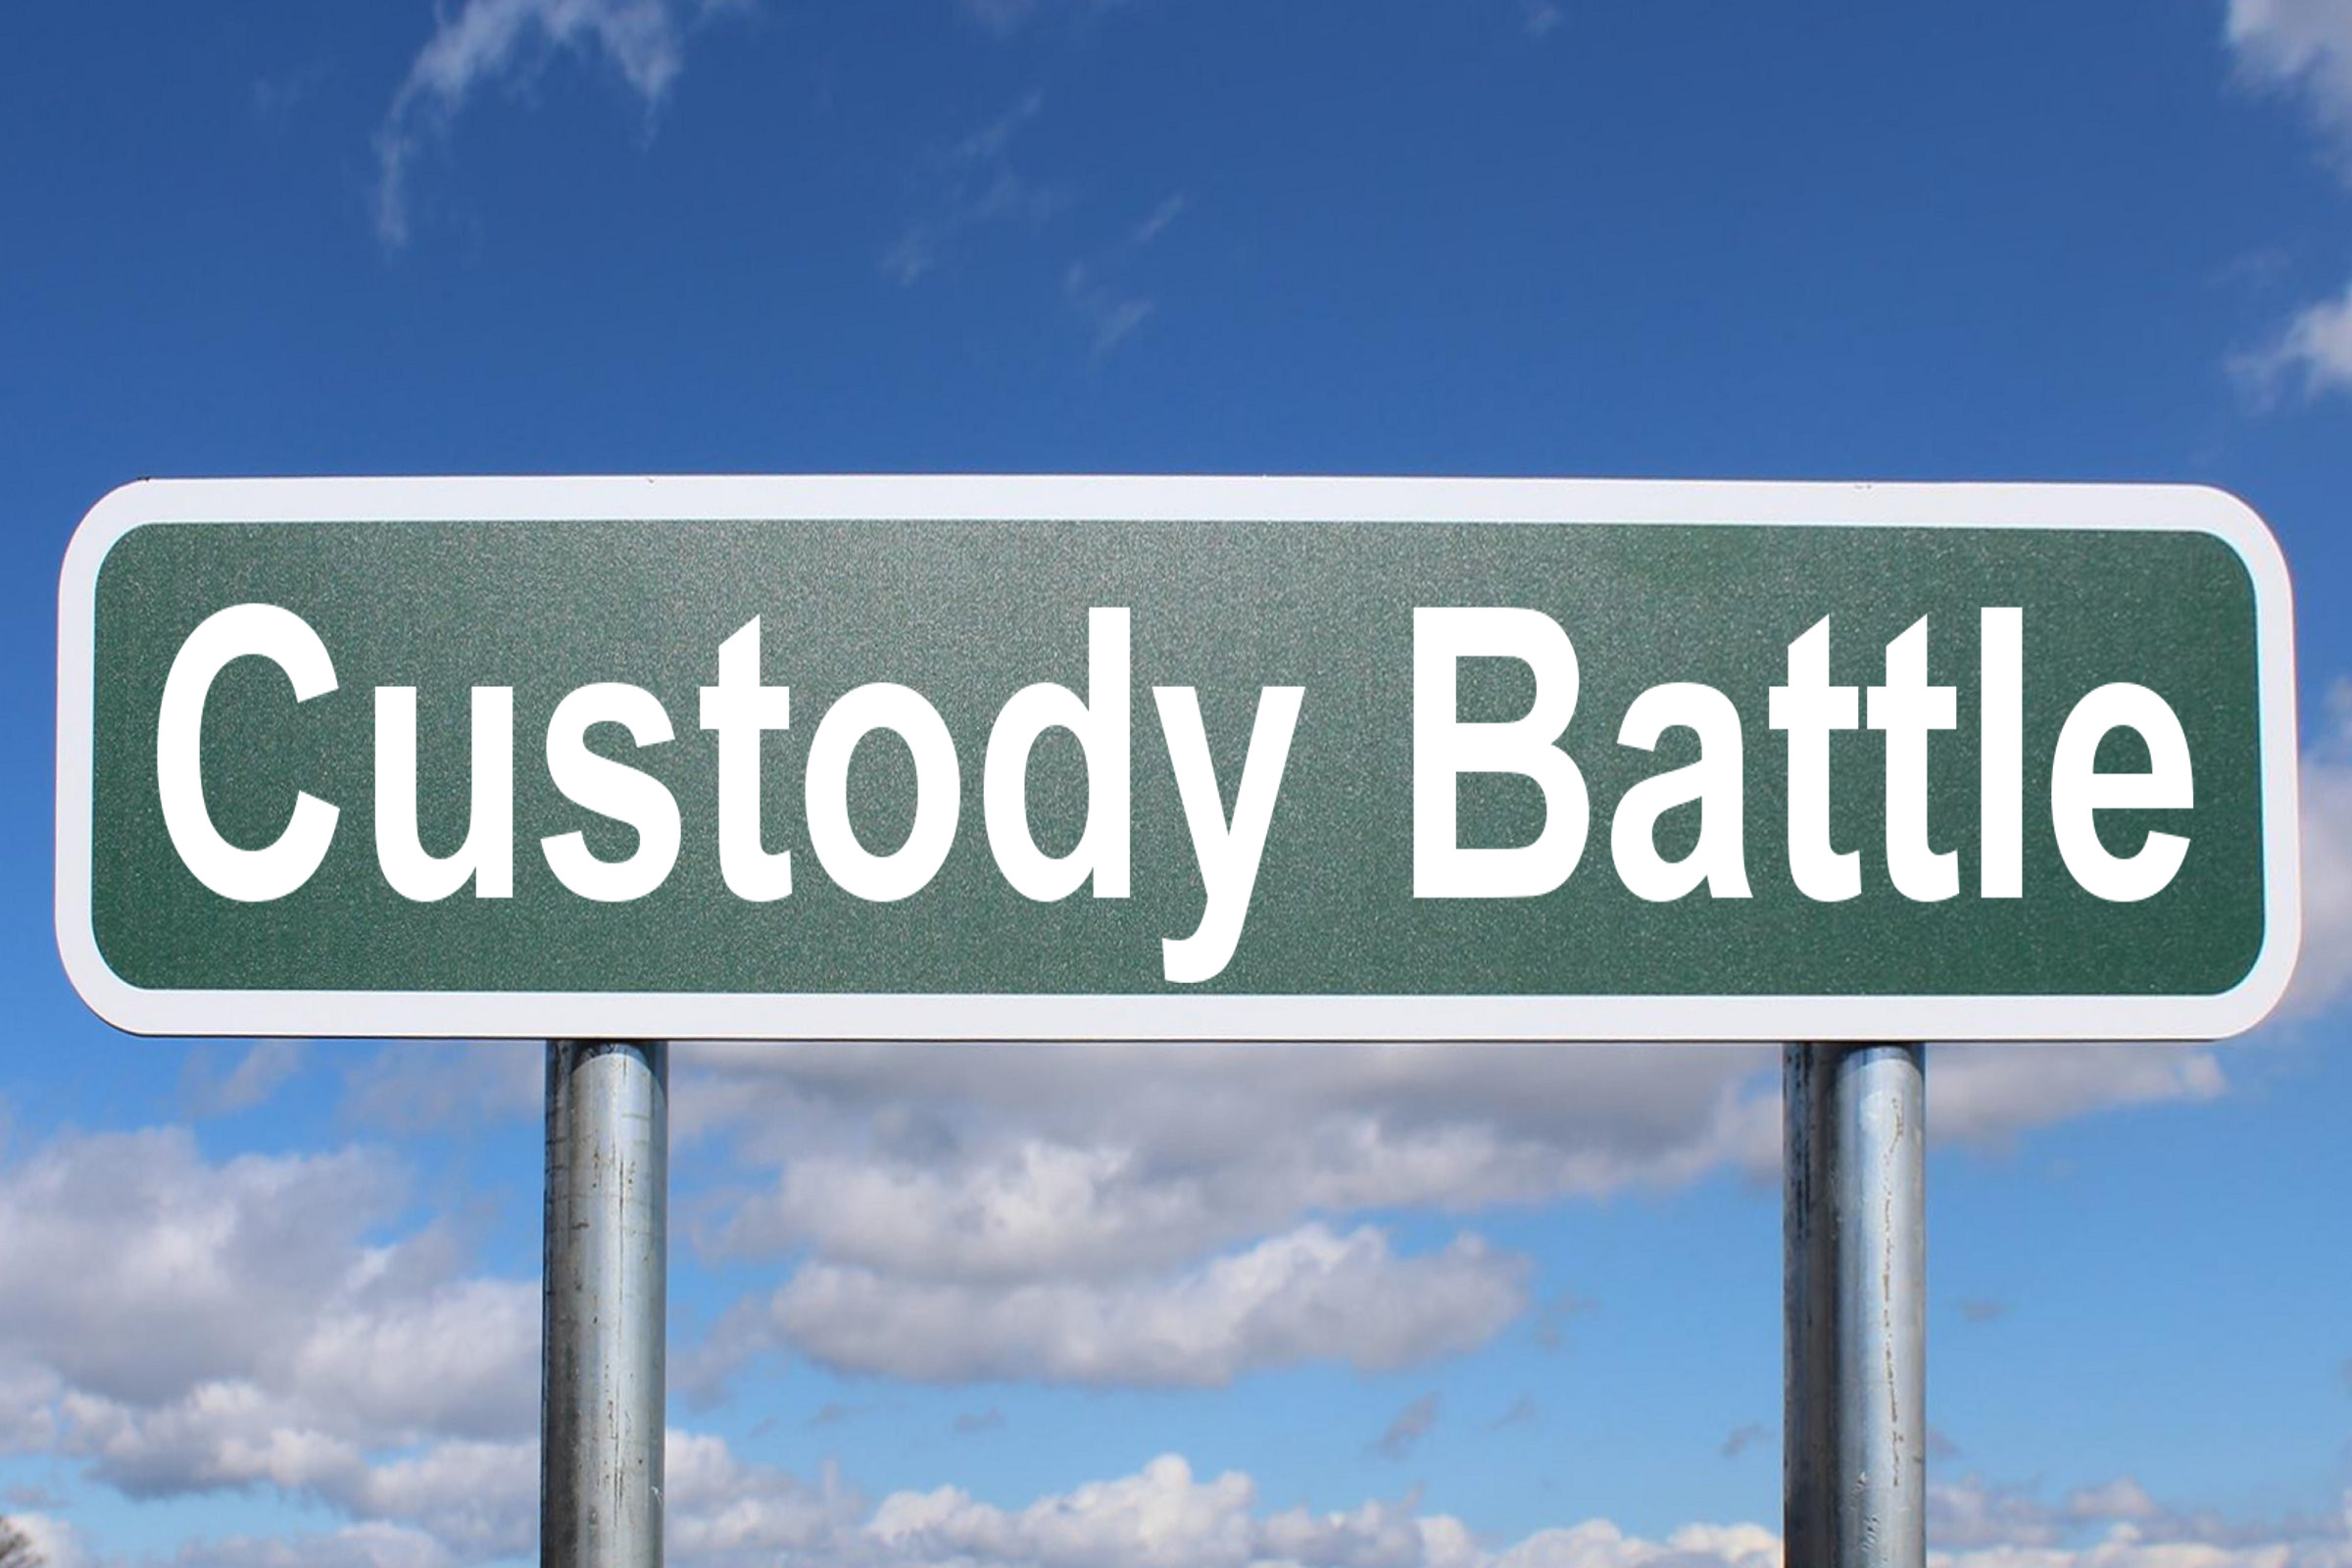 custody battle